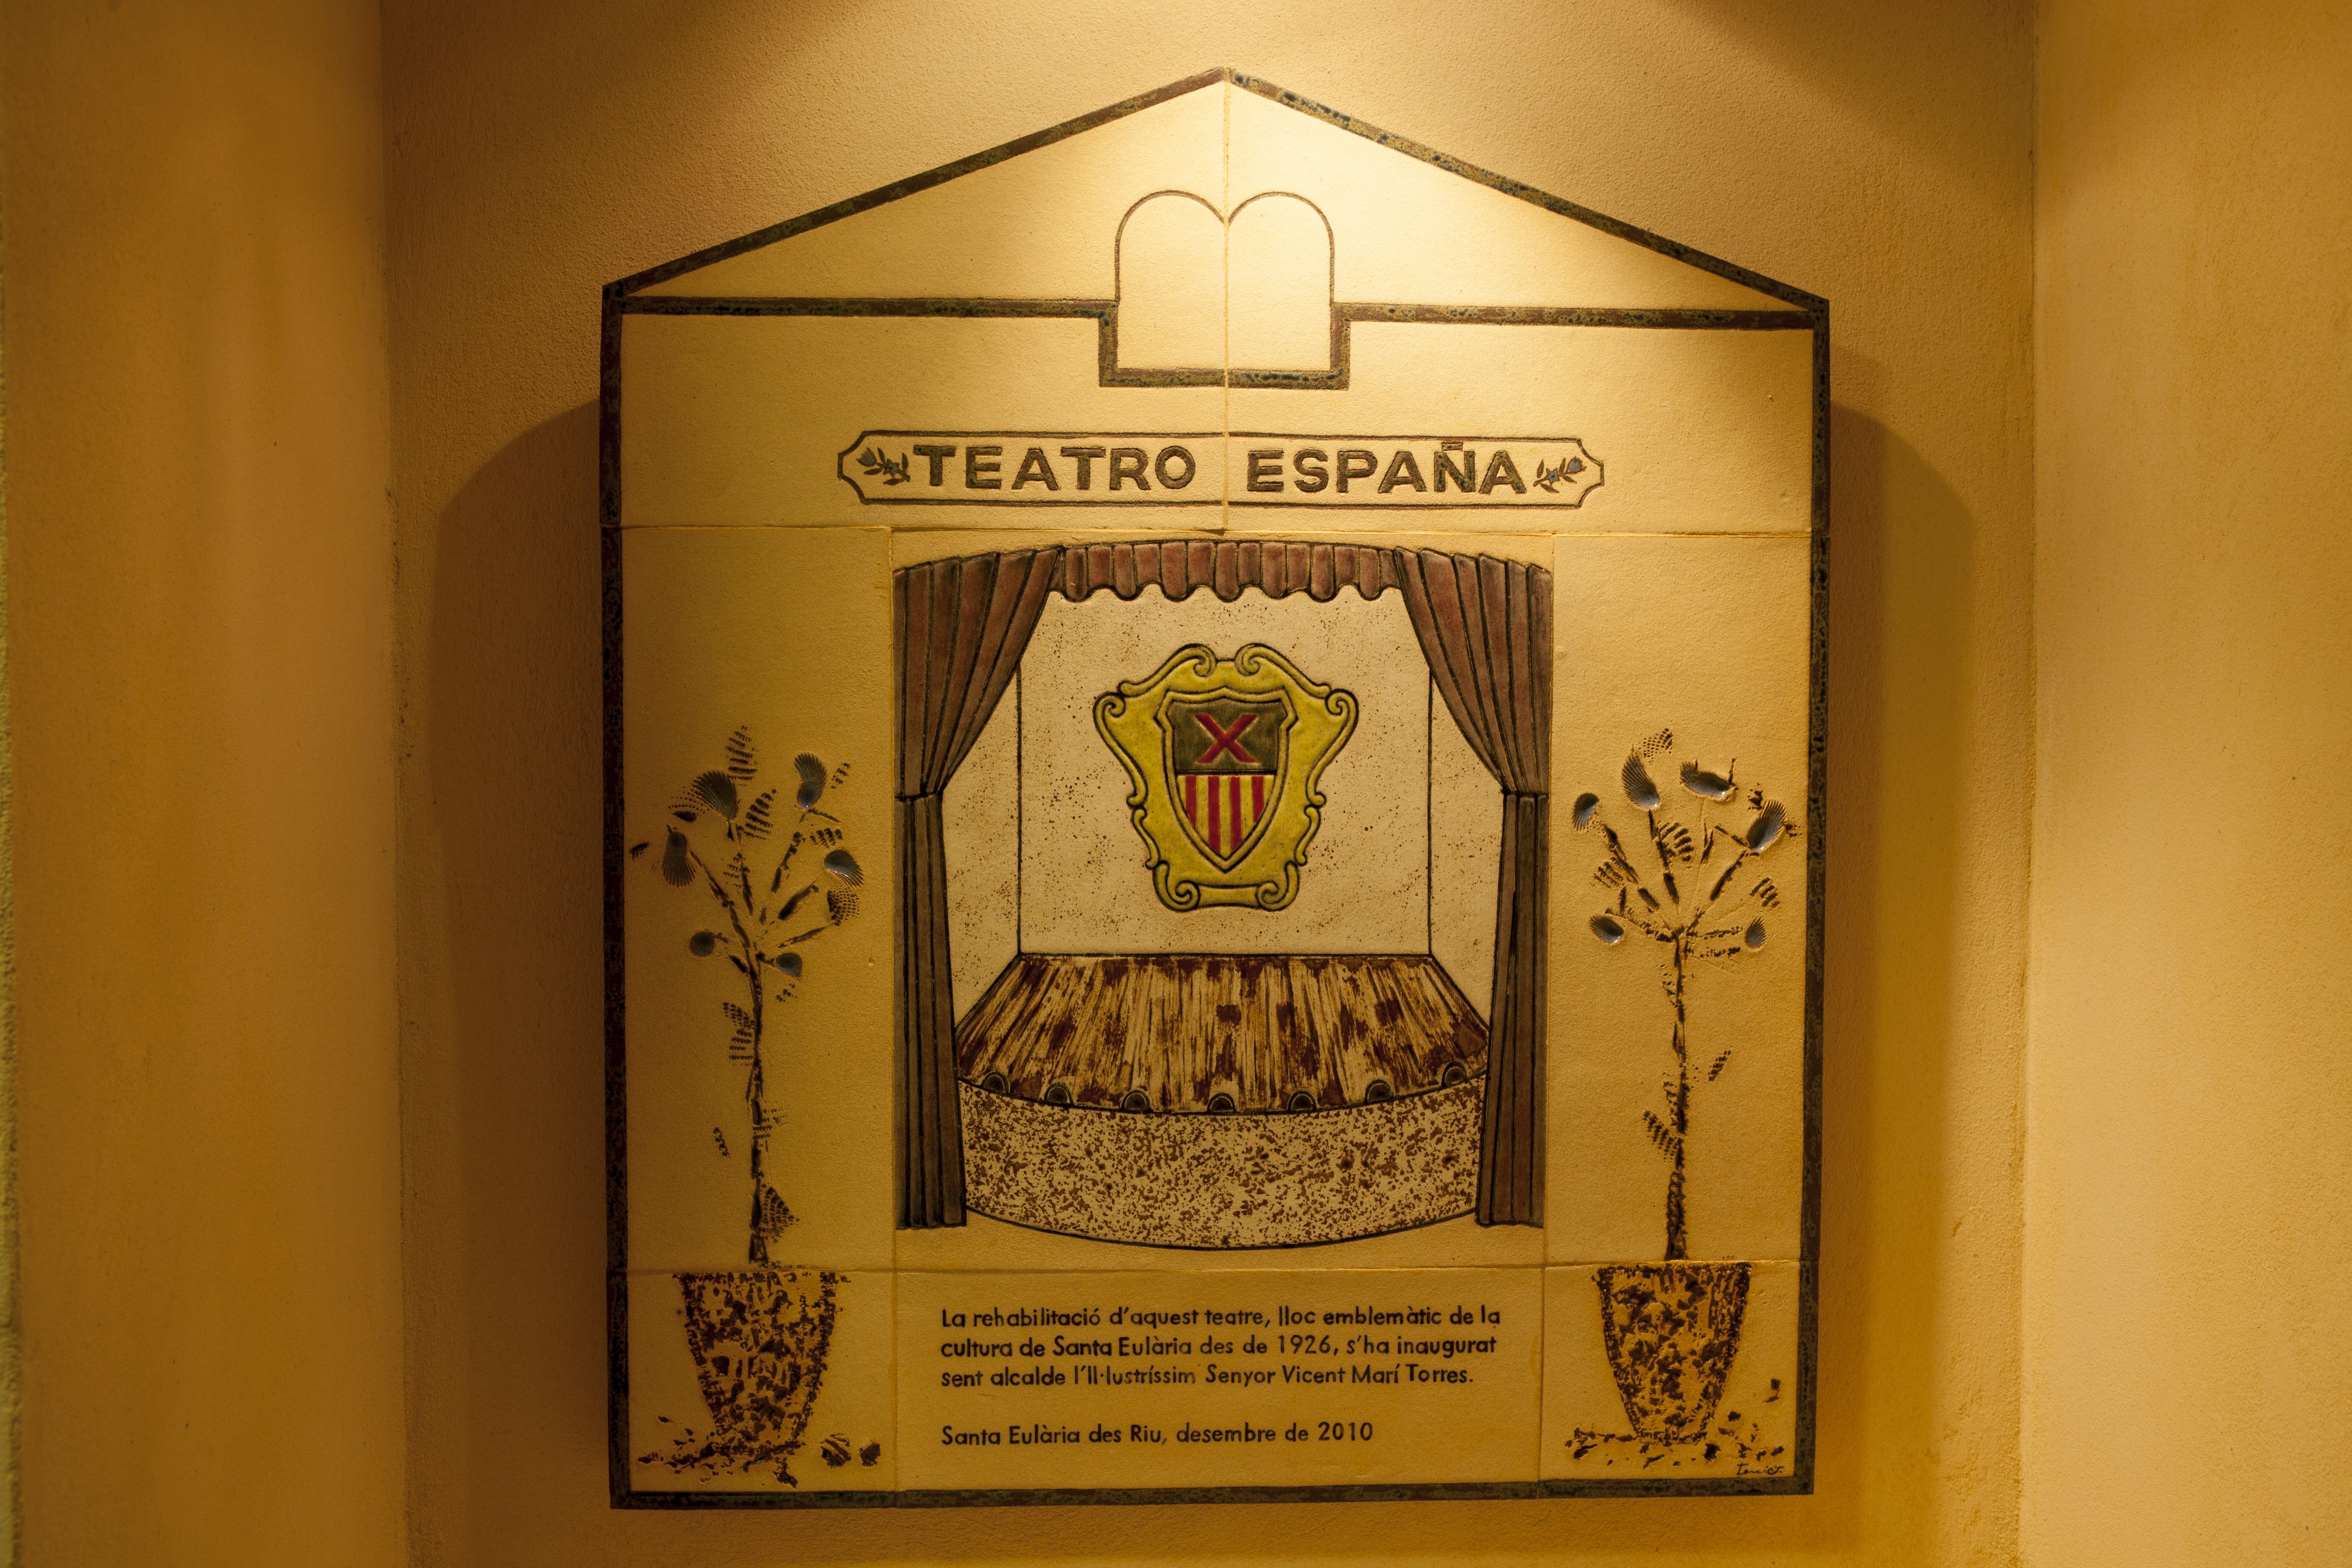  Teatro España - Ajuntament de Santa Eularia des Riu